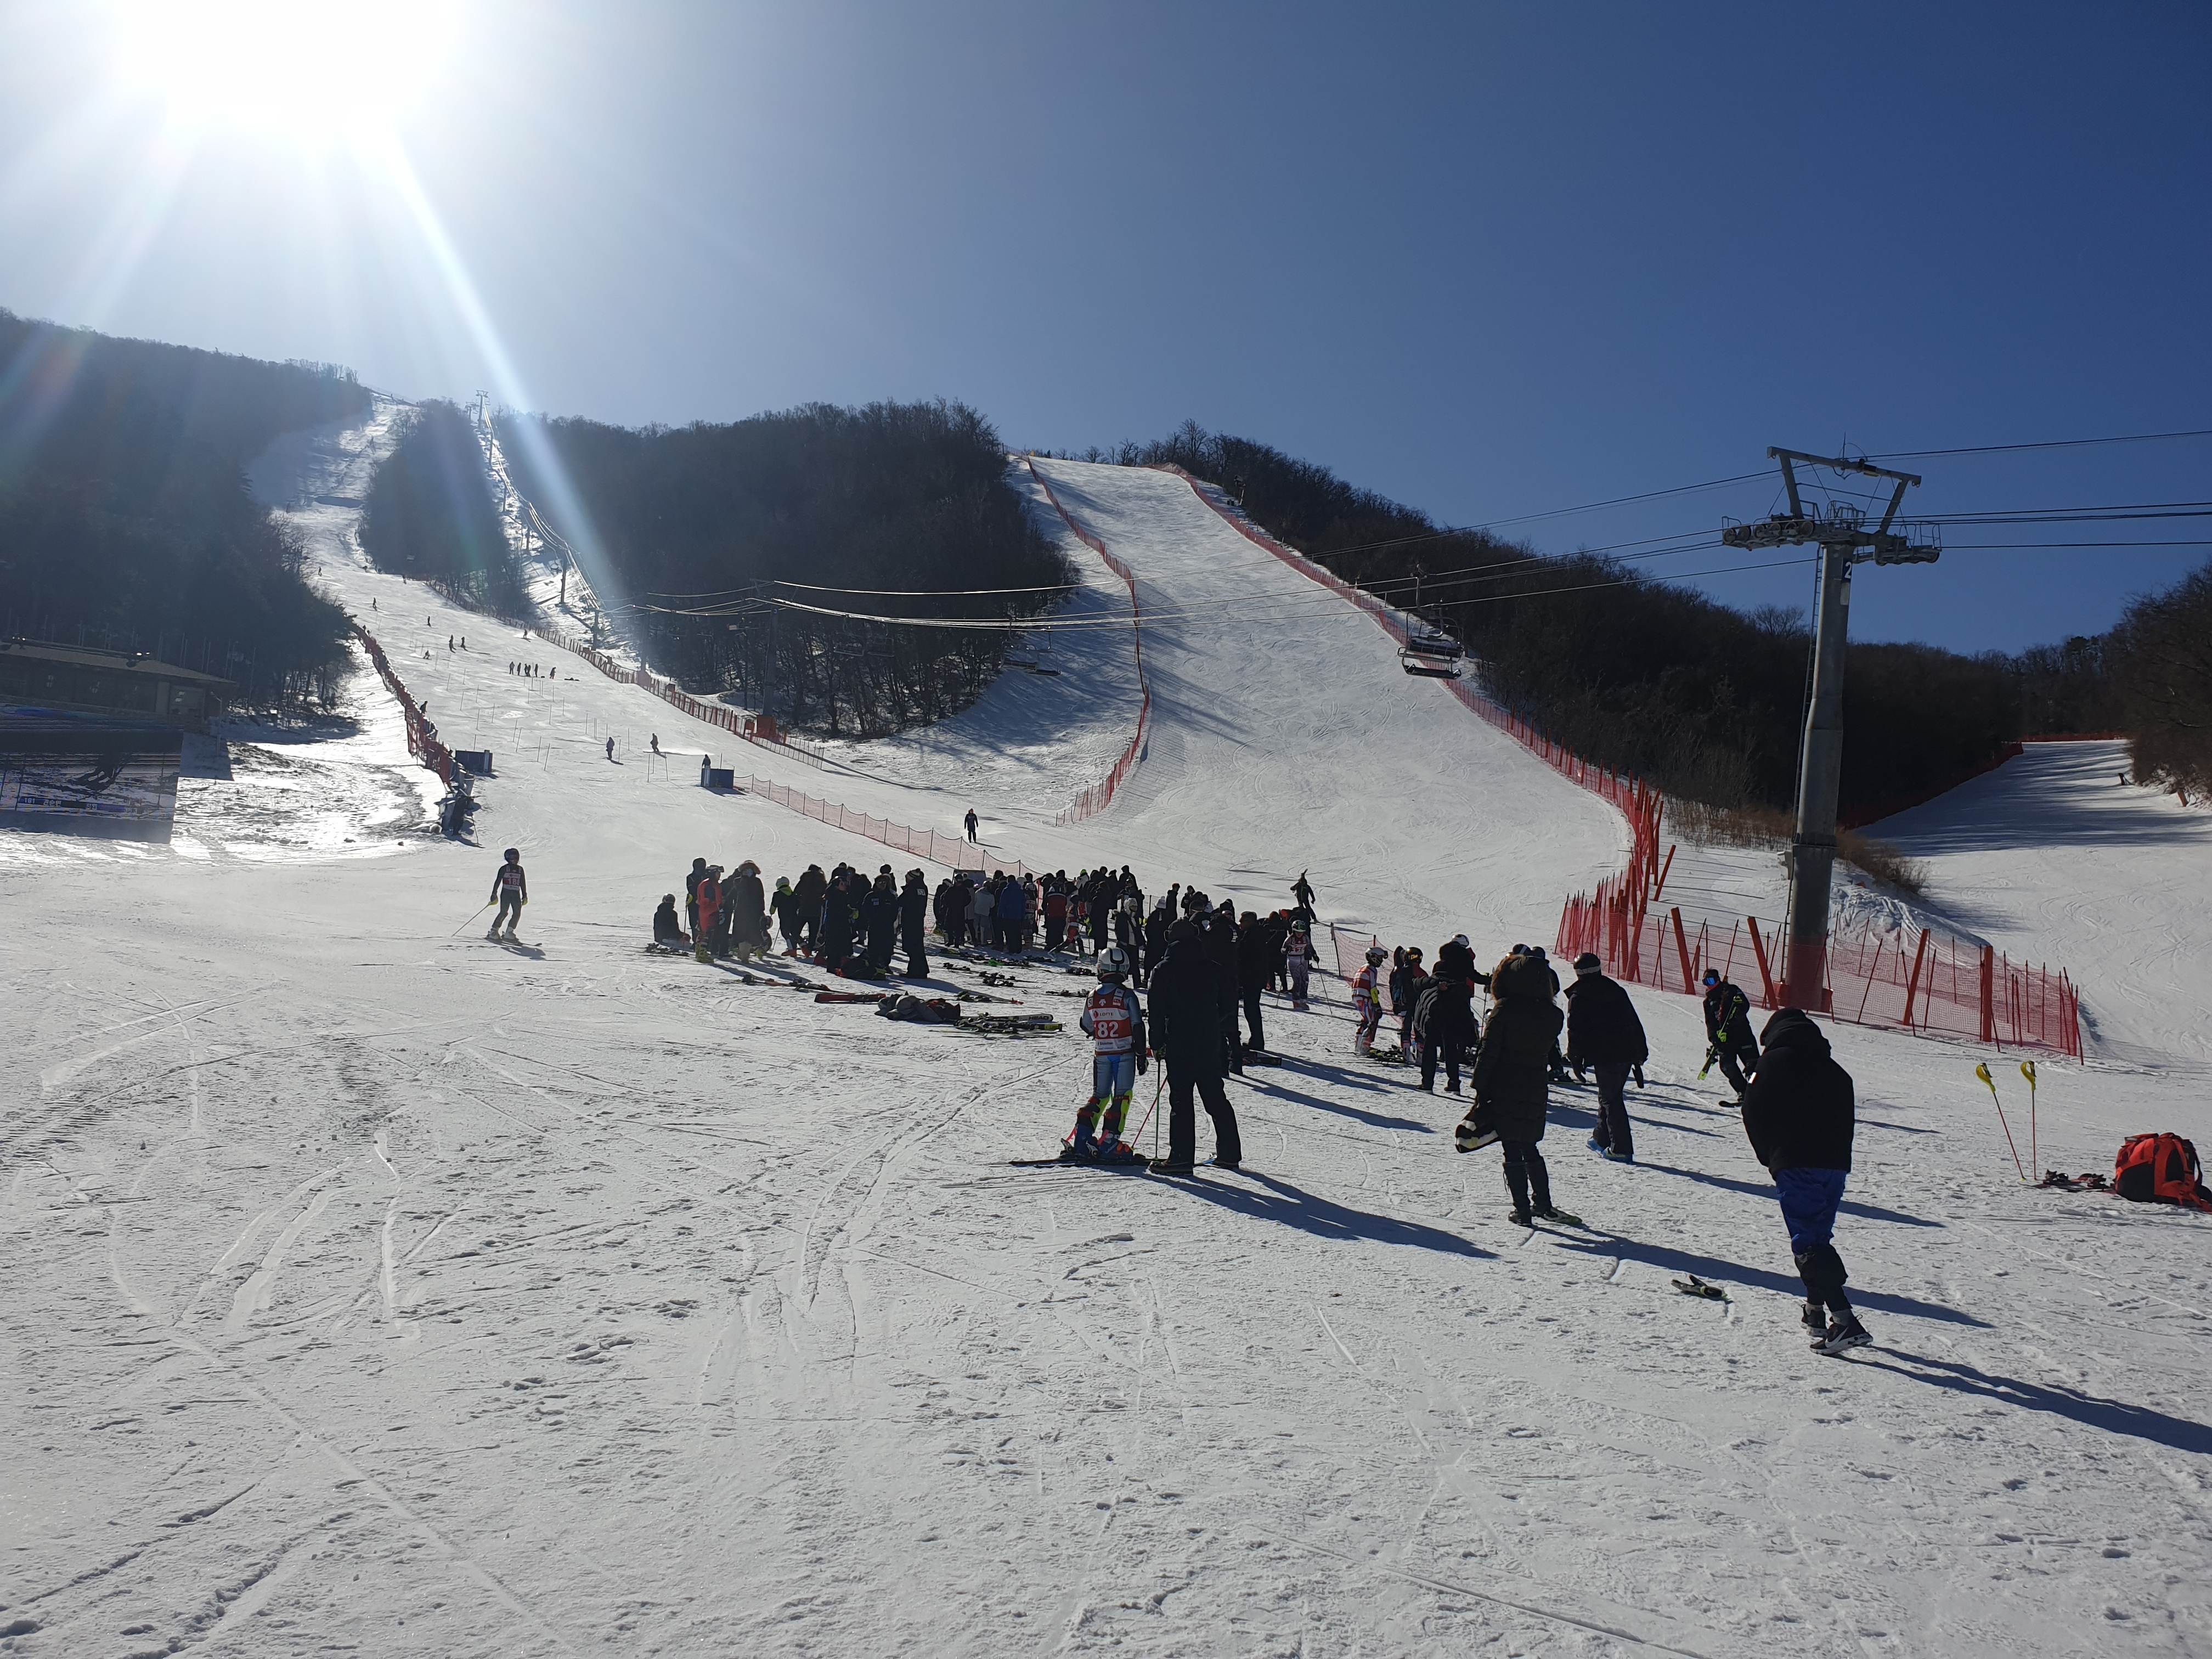 ▲ 스키알파인 결승전이 치러진 용평리조트 레인보우 코스에 모인 선수들